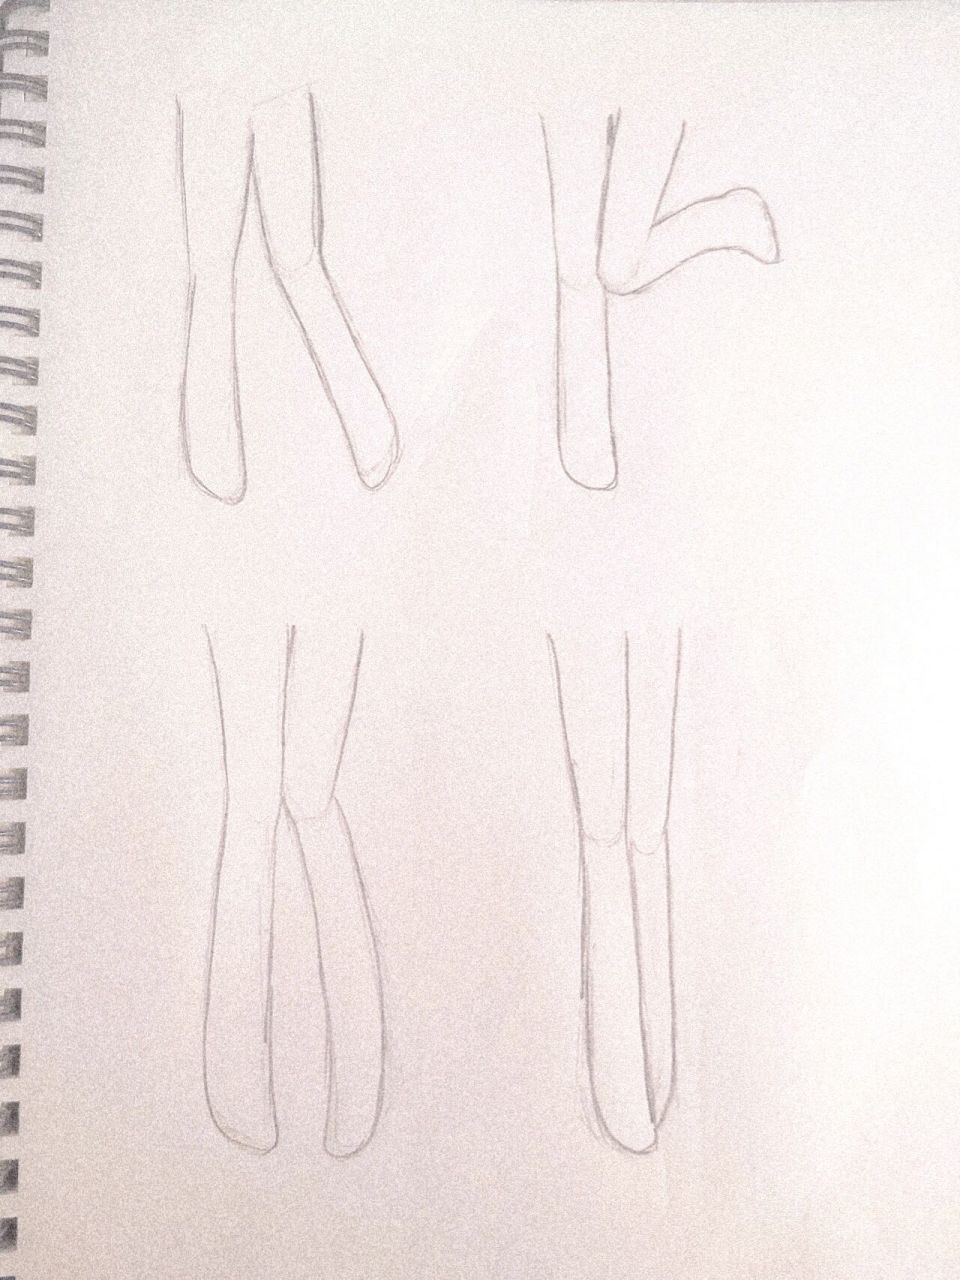 女生的腿简笔画图片